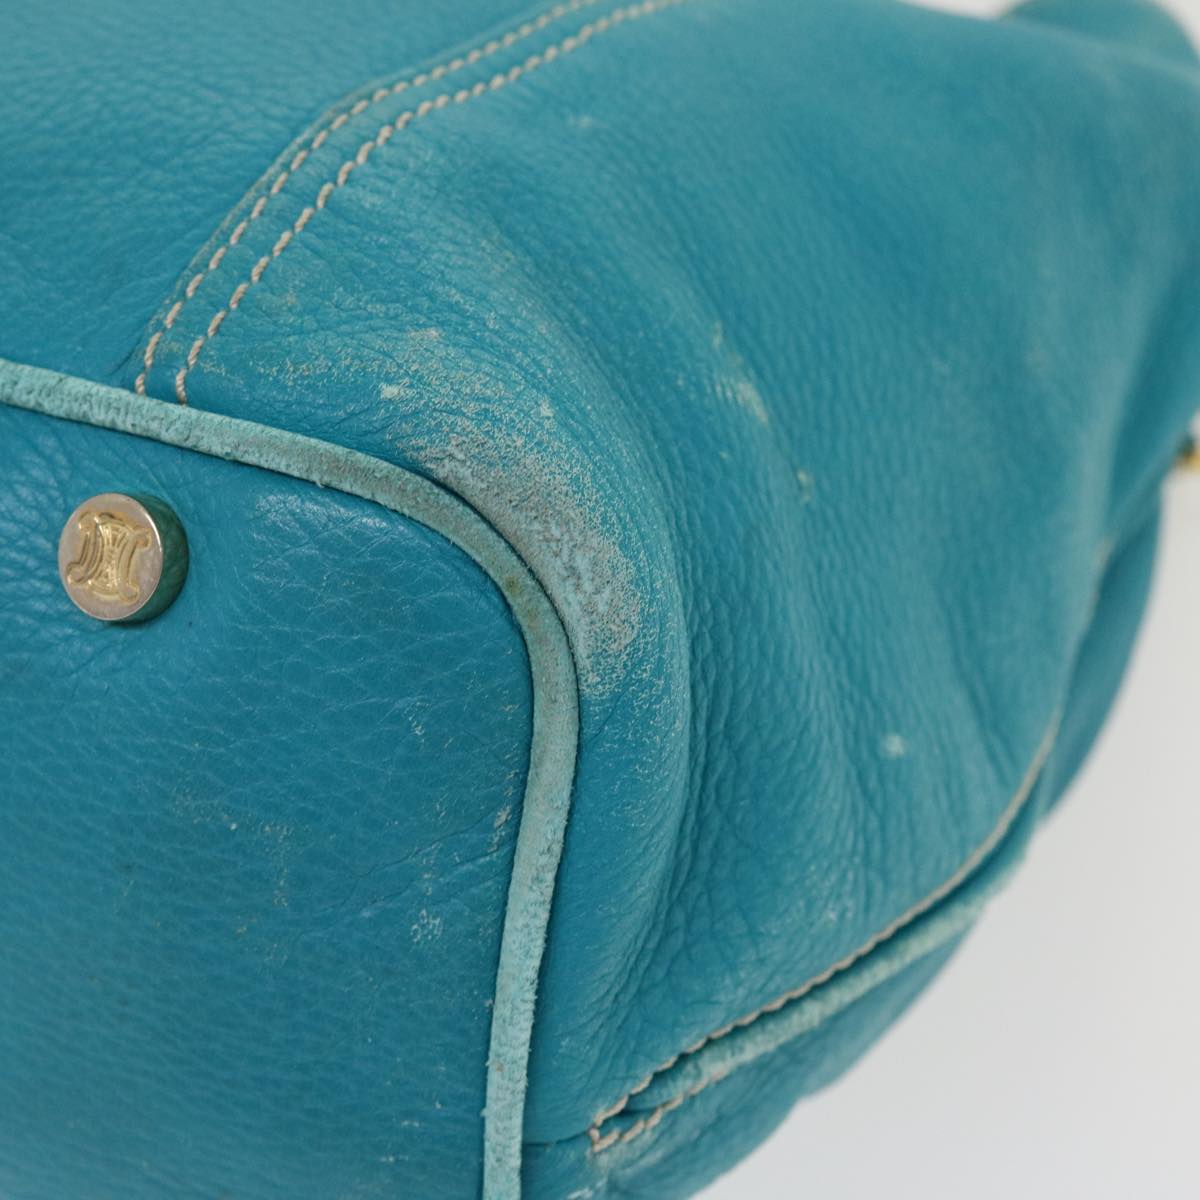 CELINE Shoulder Bag Leather Light Blue Auth im428